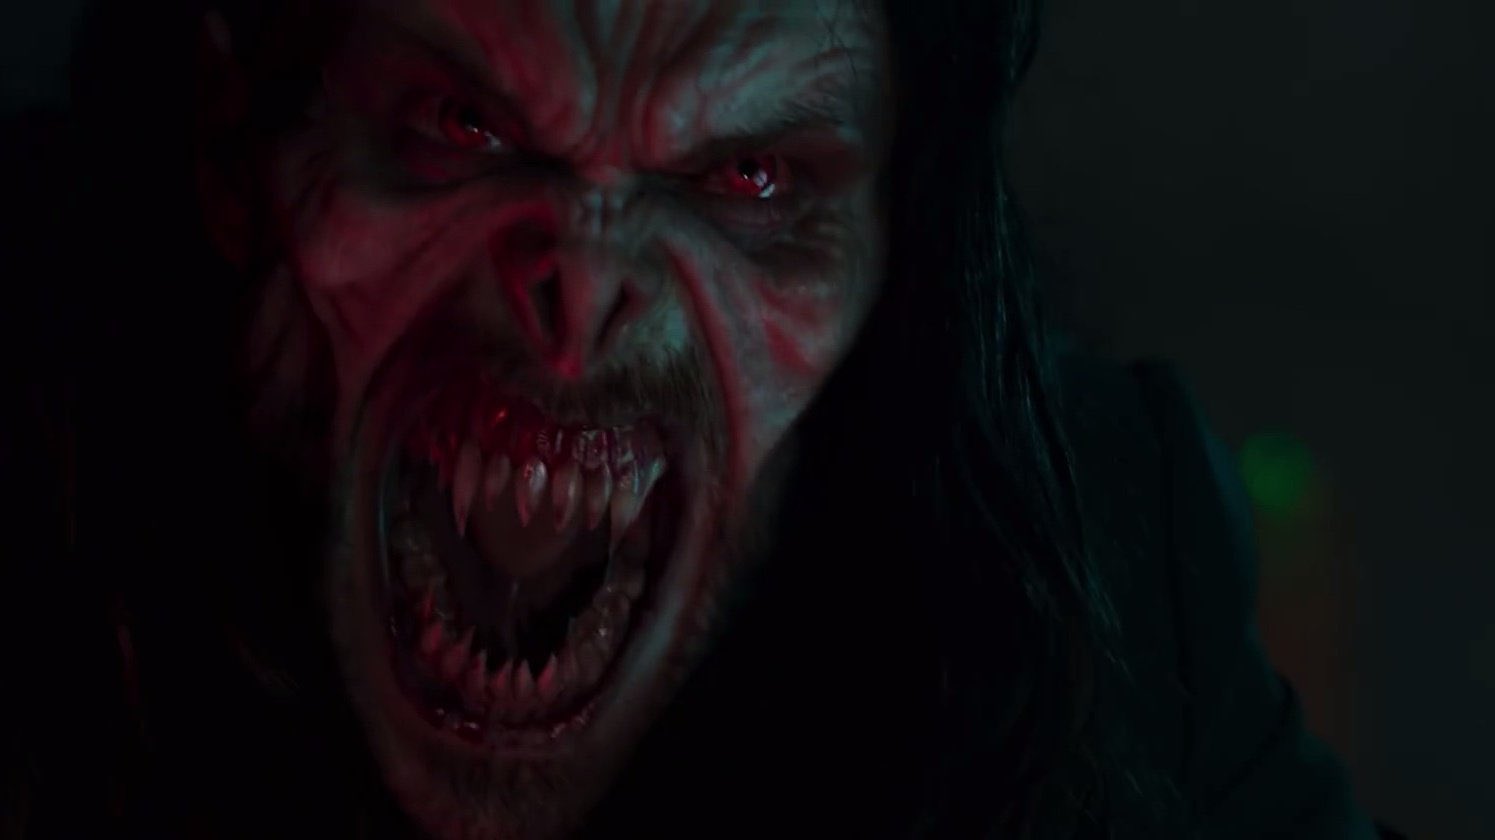 دومین تریلر رسمی فیلم Morbius منتشر شد